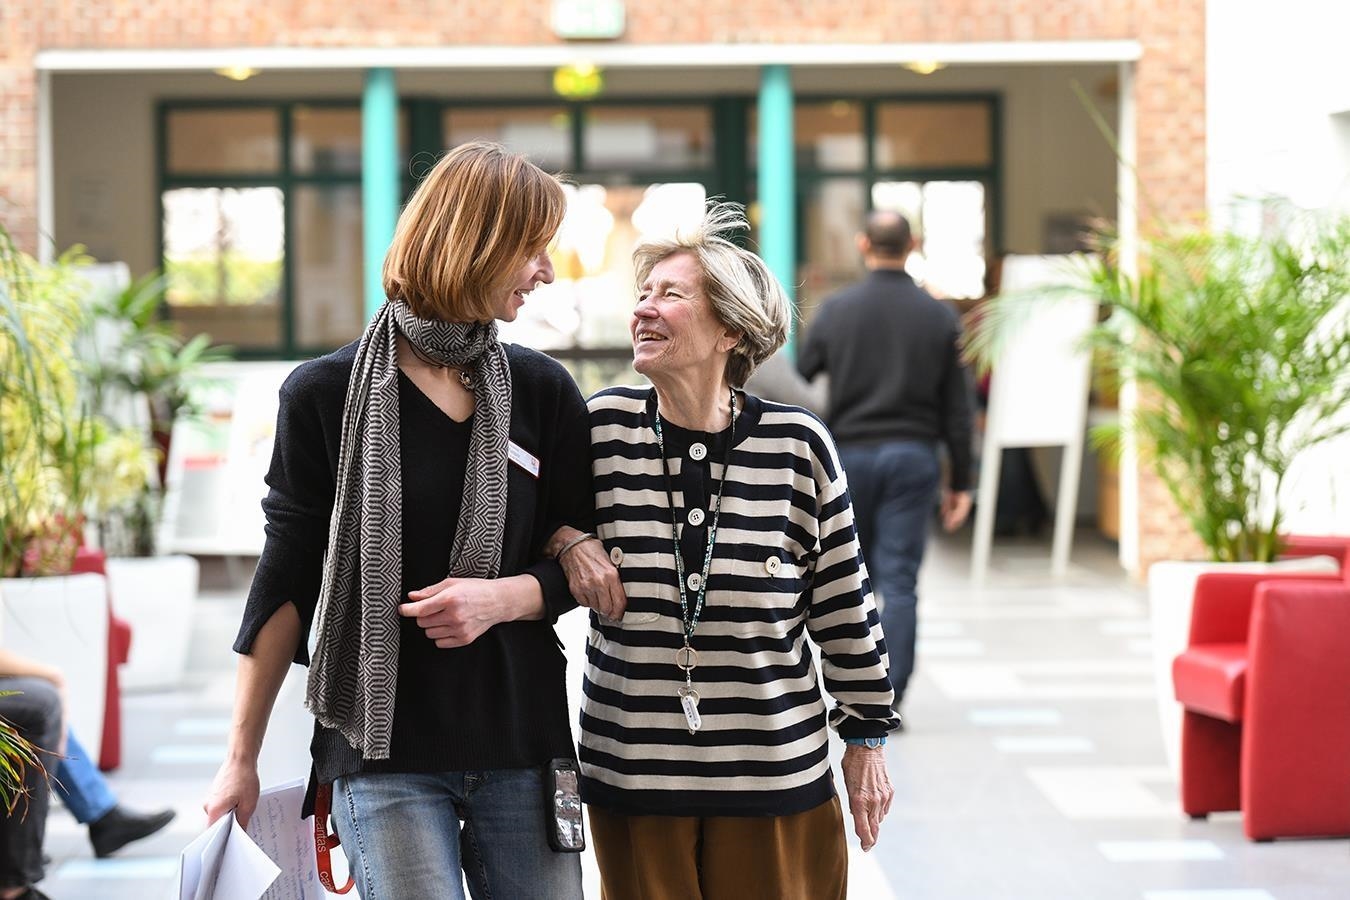 Eine Seniorin und ein junge Frau gehen untergehakt spazieren und unterhalten sich.